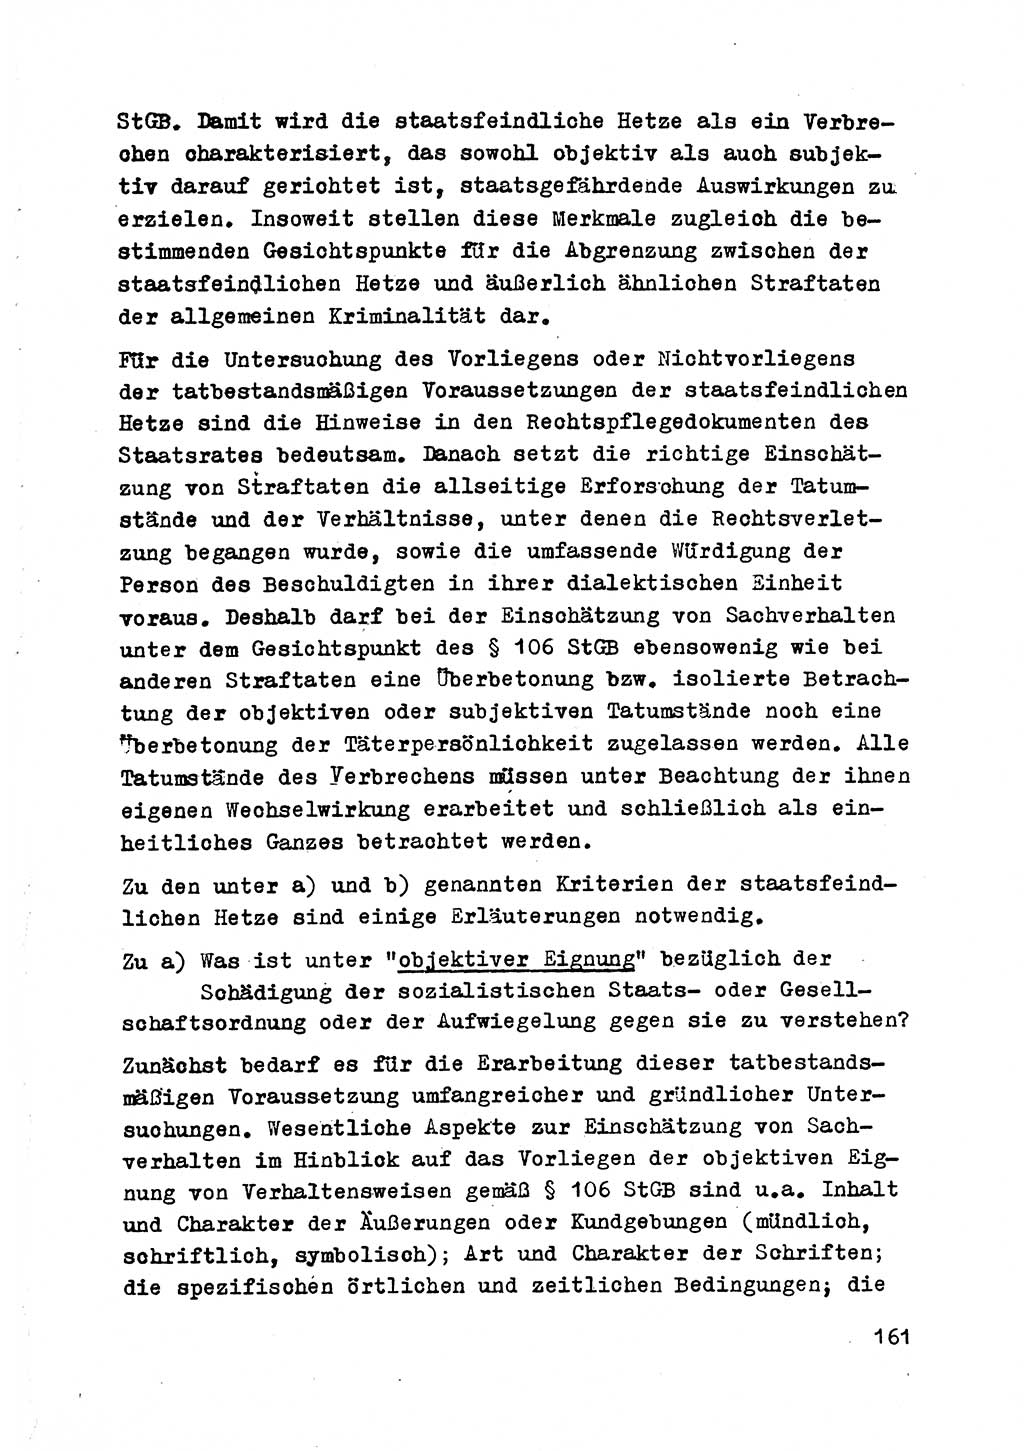 Strafrecht der DDR (Deutsche Demokratische Republik), Besonderer Teil, Lehrmaterial, Heft 2 1969, Seite 161 (Strafr. DDR BT Lehrmat. H. 2 1969, S. 161)